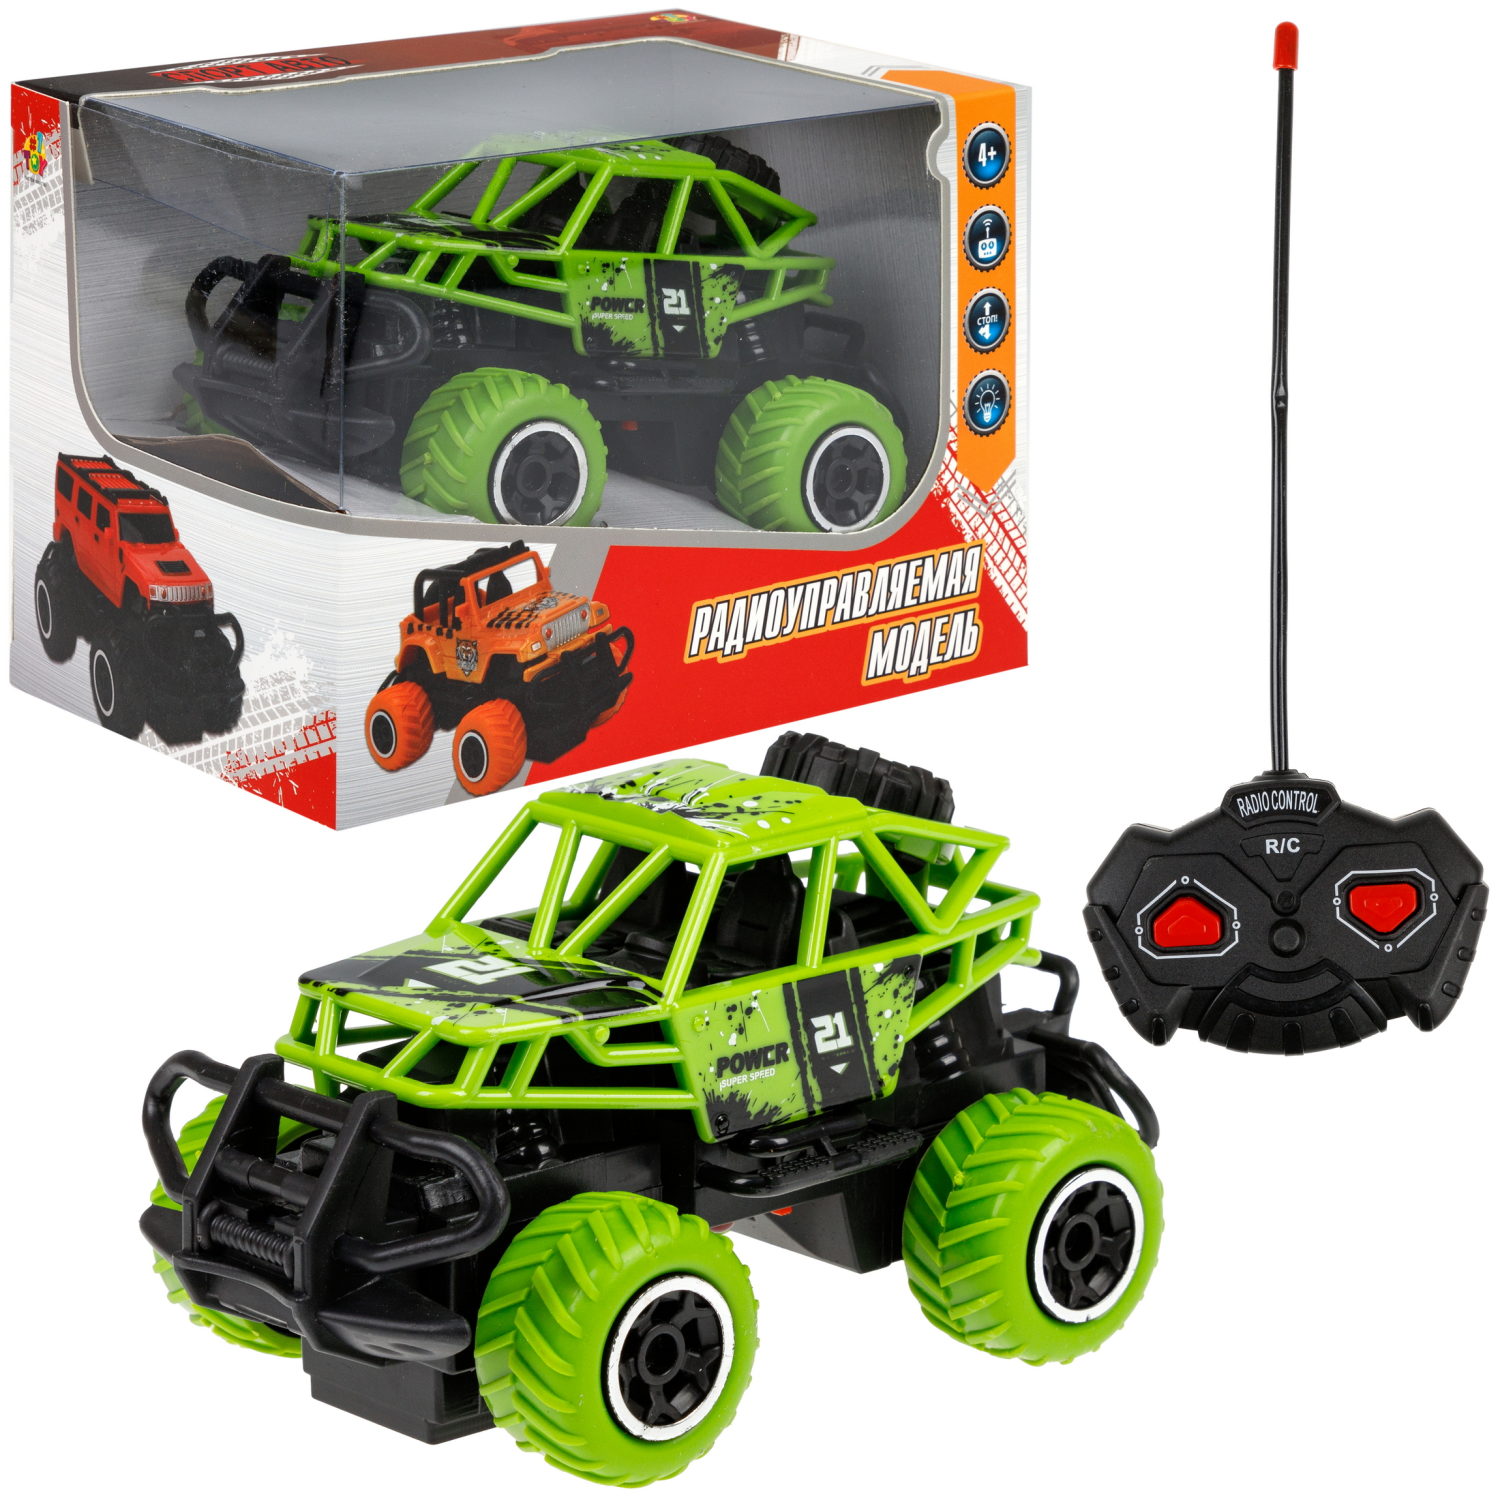 Машинка 1toy Спортавто багги на радиоуправлении, зеленый машинка на пульте управления s s toys монстр трак мини на радиоуправлении игрушечная